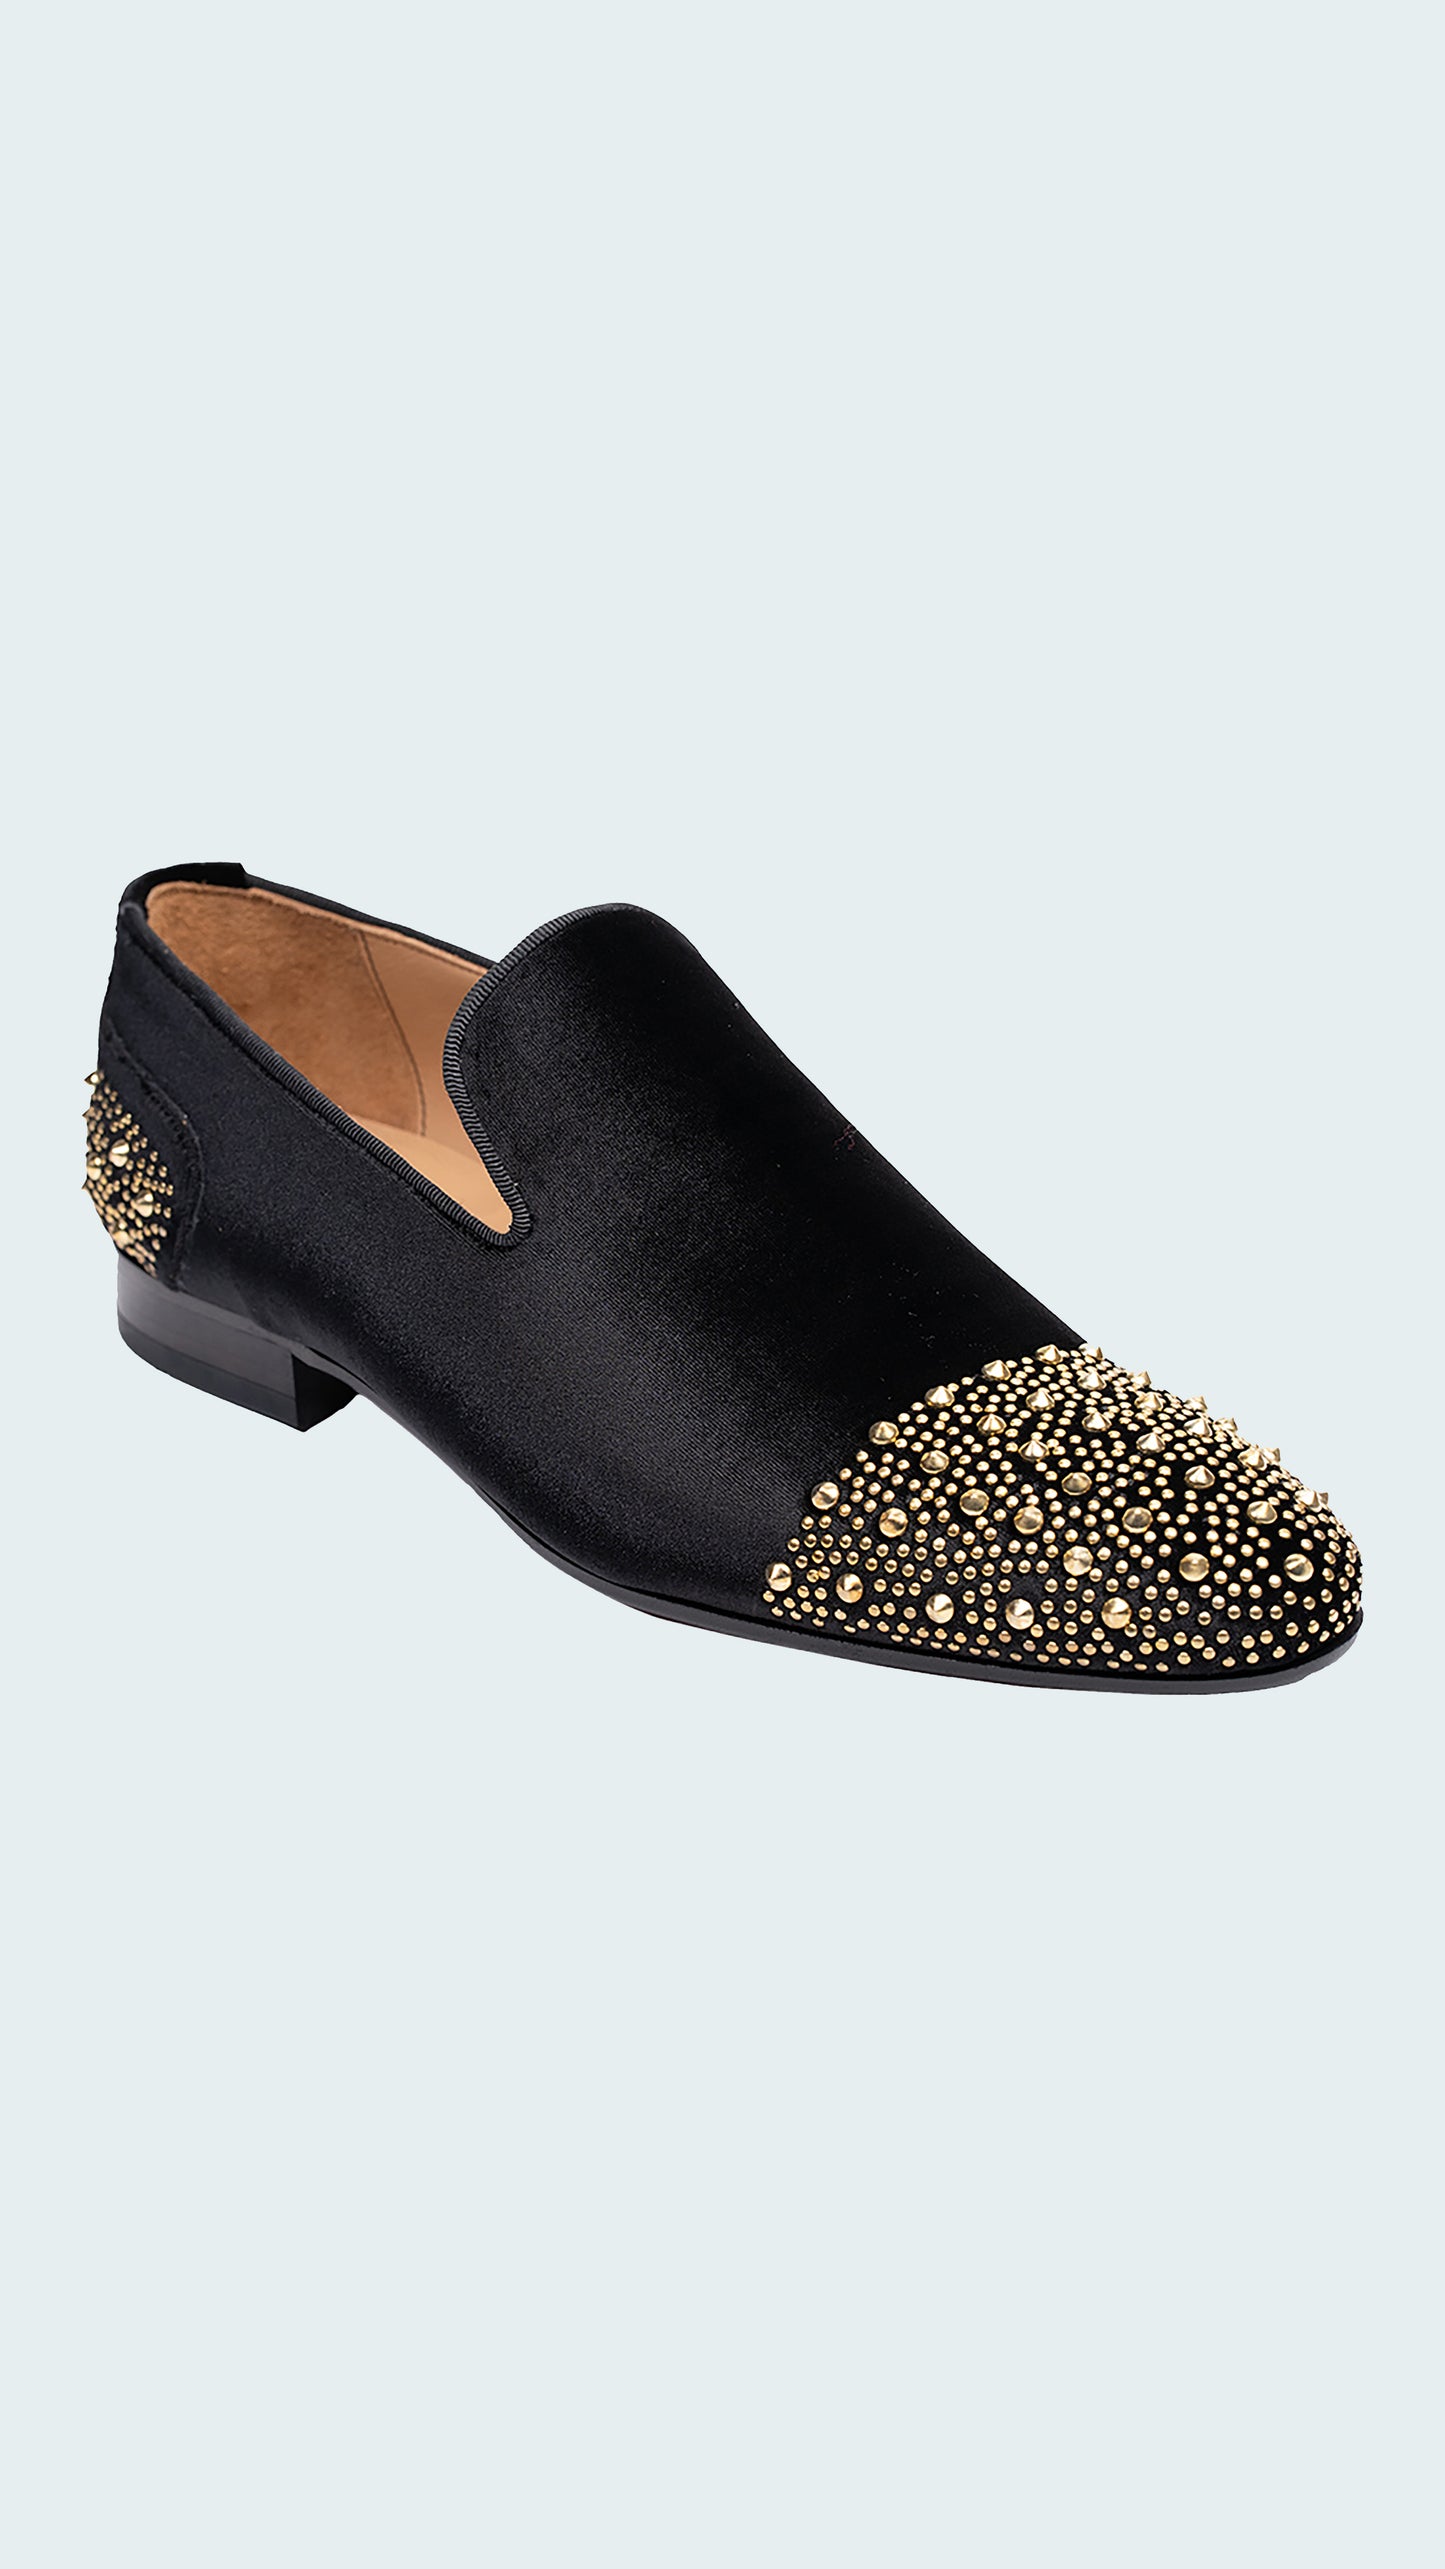 Men's Black Velvet Loafers with Gold Stud Embellishments by Vercini